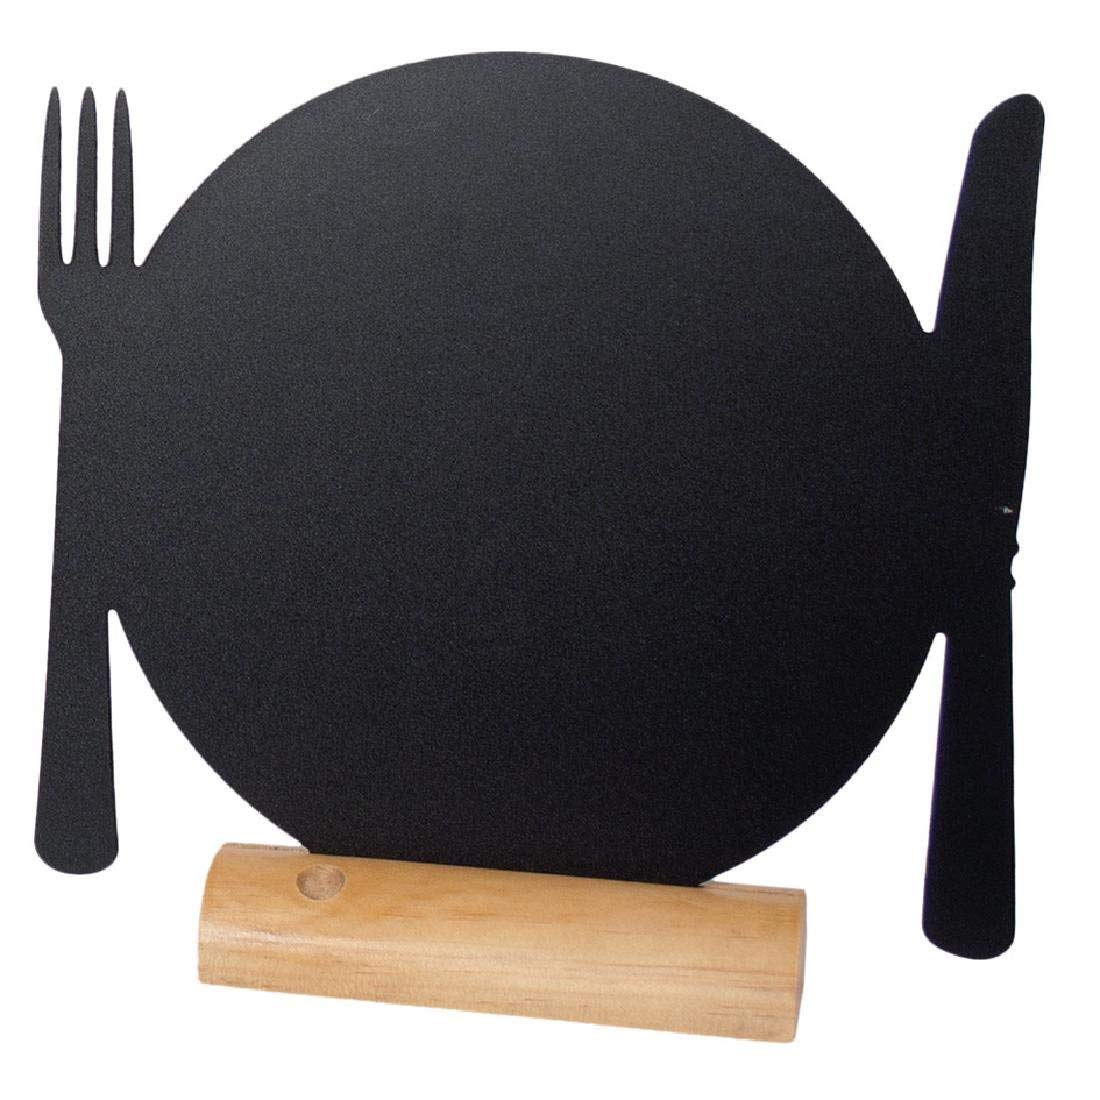 Mini lavagna segnaposto Silhouette - 13,5x9,3 cm - forma piatto - nero - Securit - set 3 pezzi